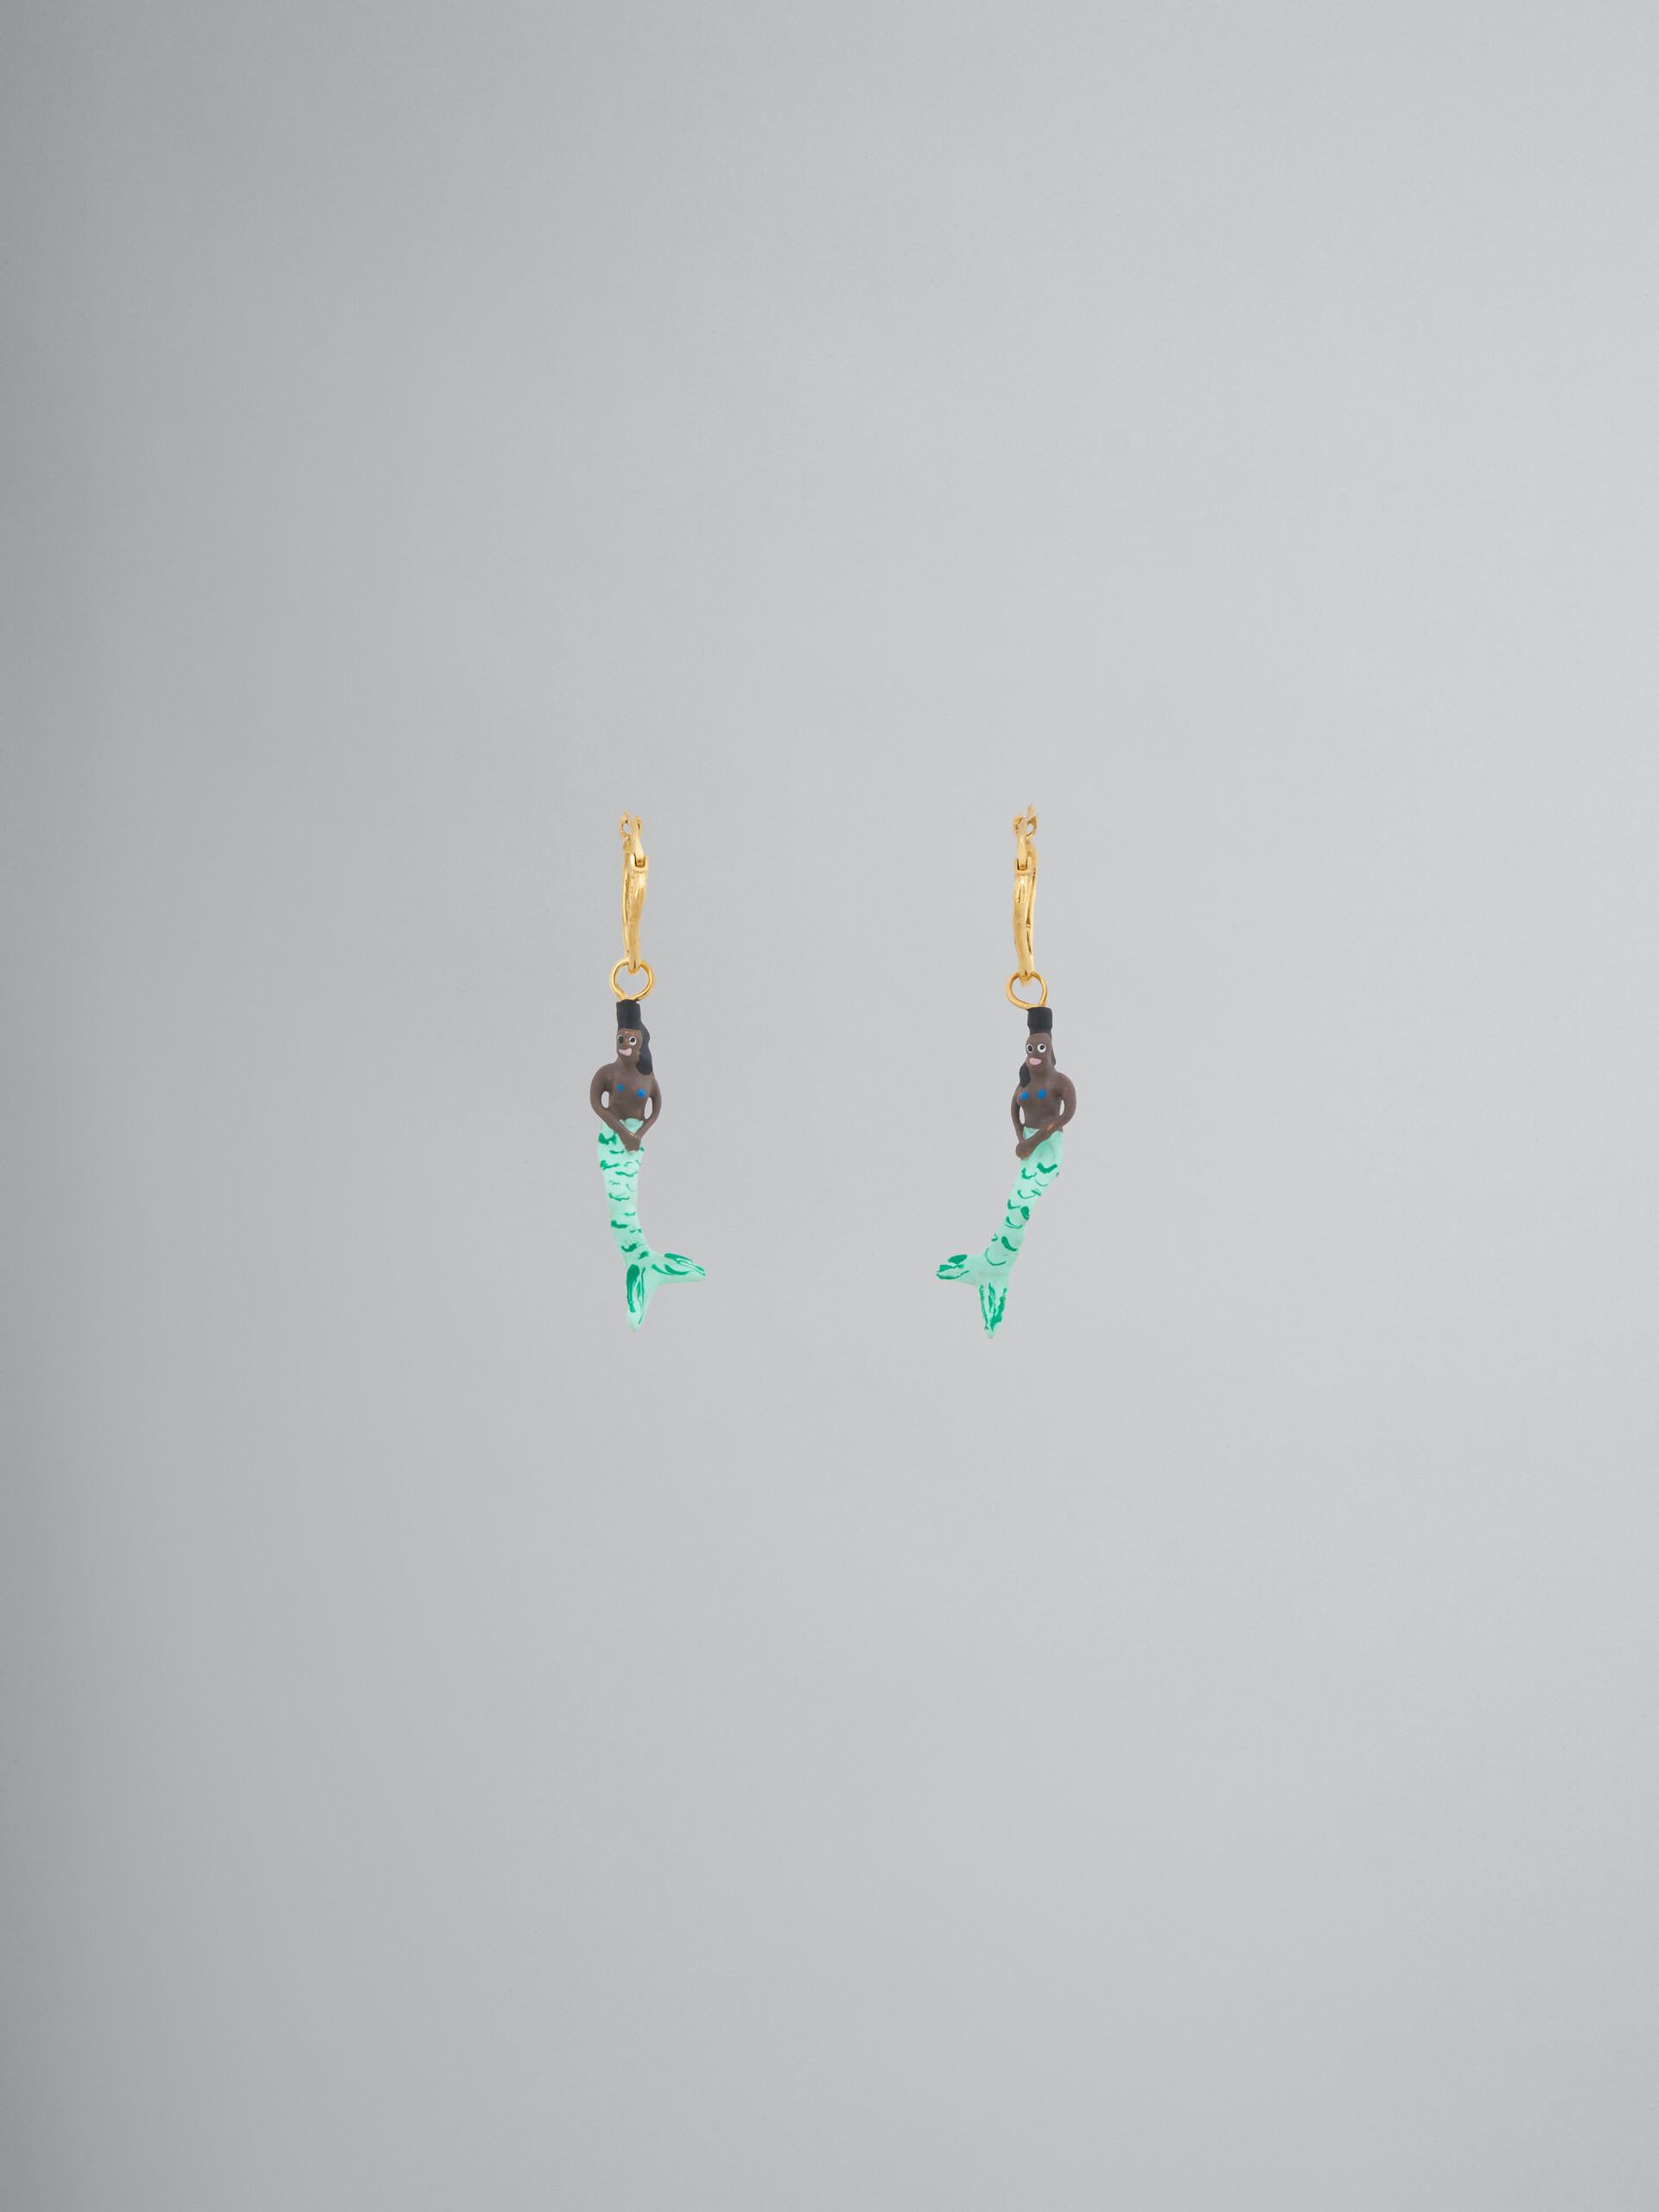 Earrings with mermaid pendant - Earrings - Image 1